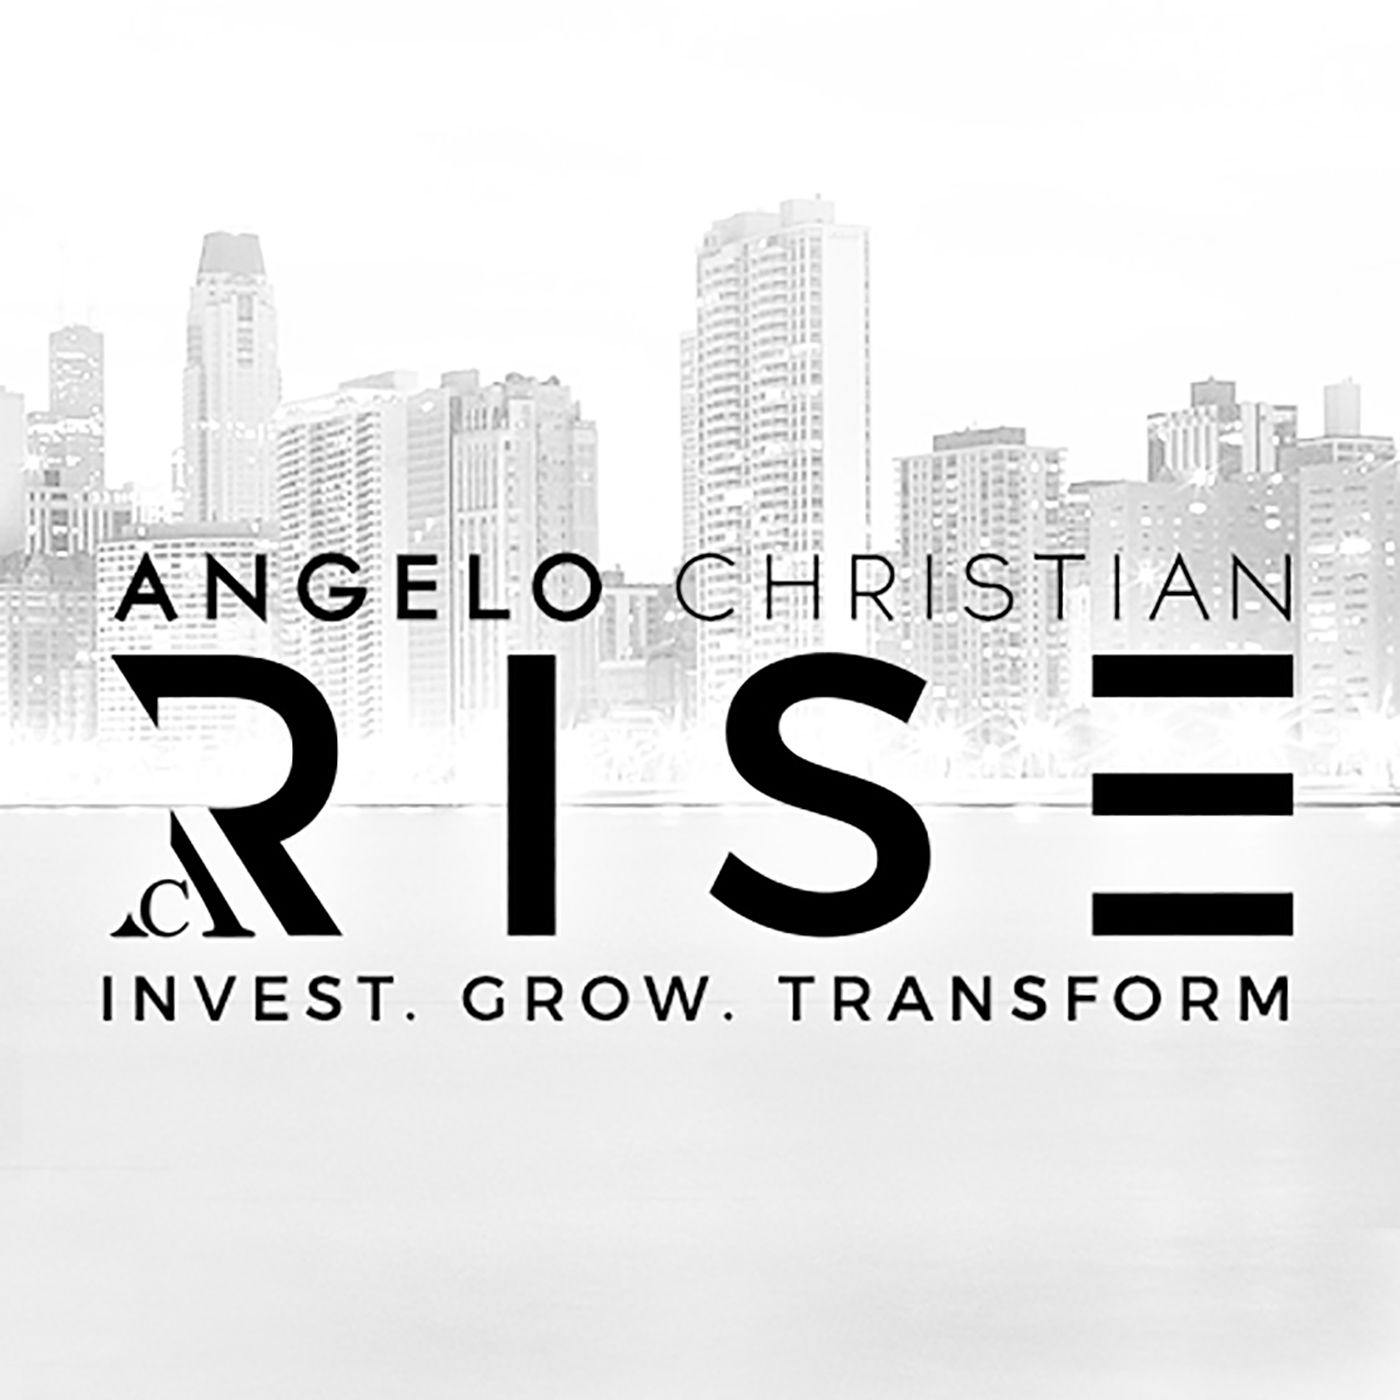 Angelo Christian Investor